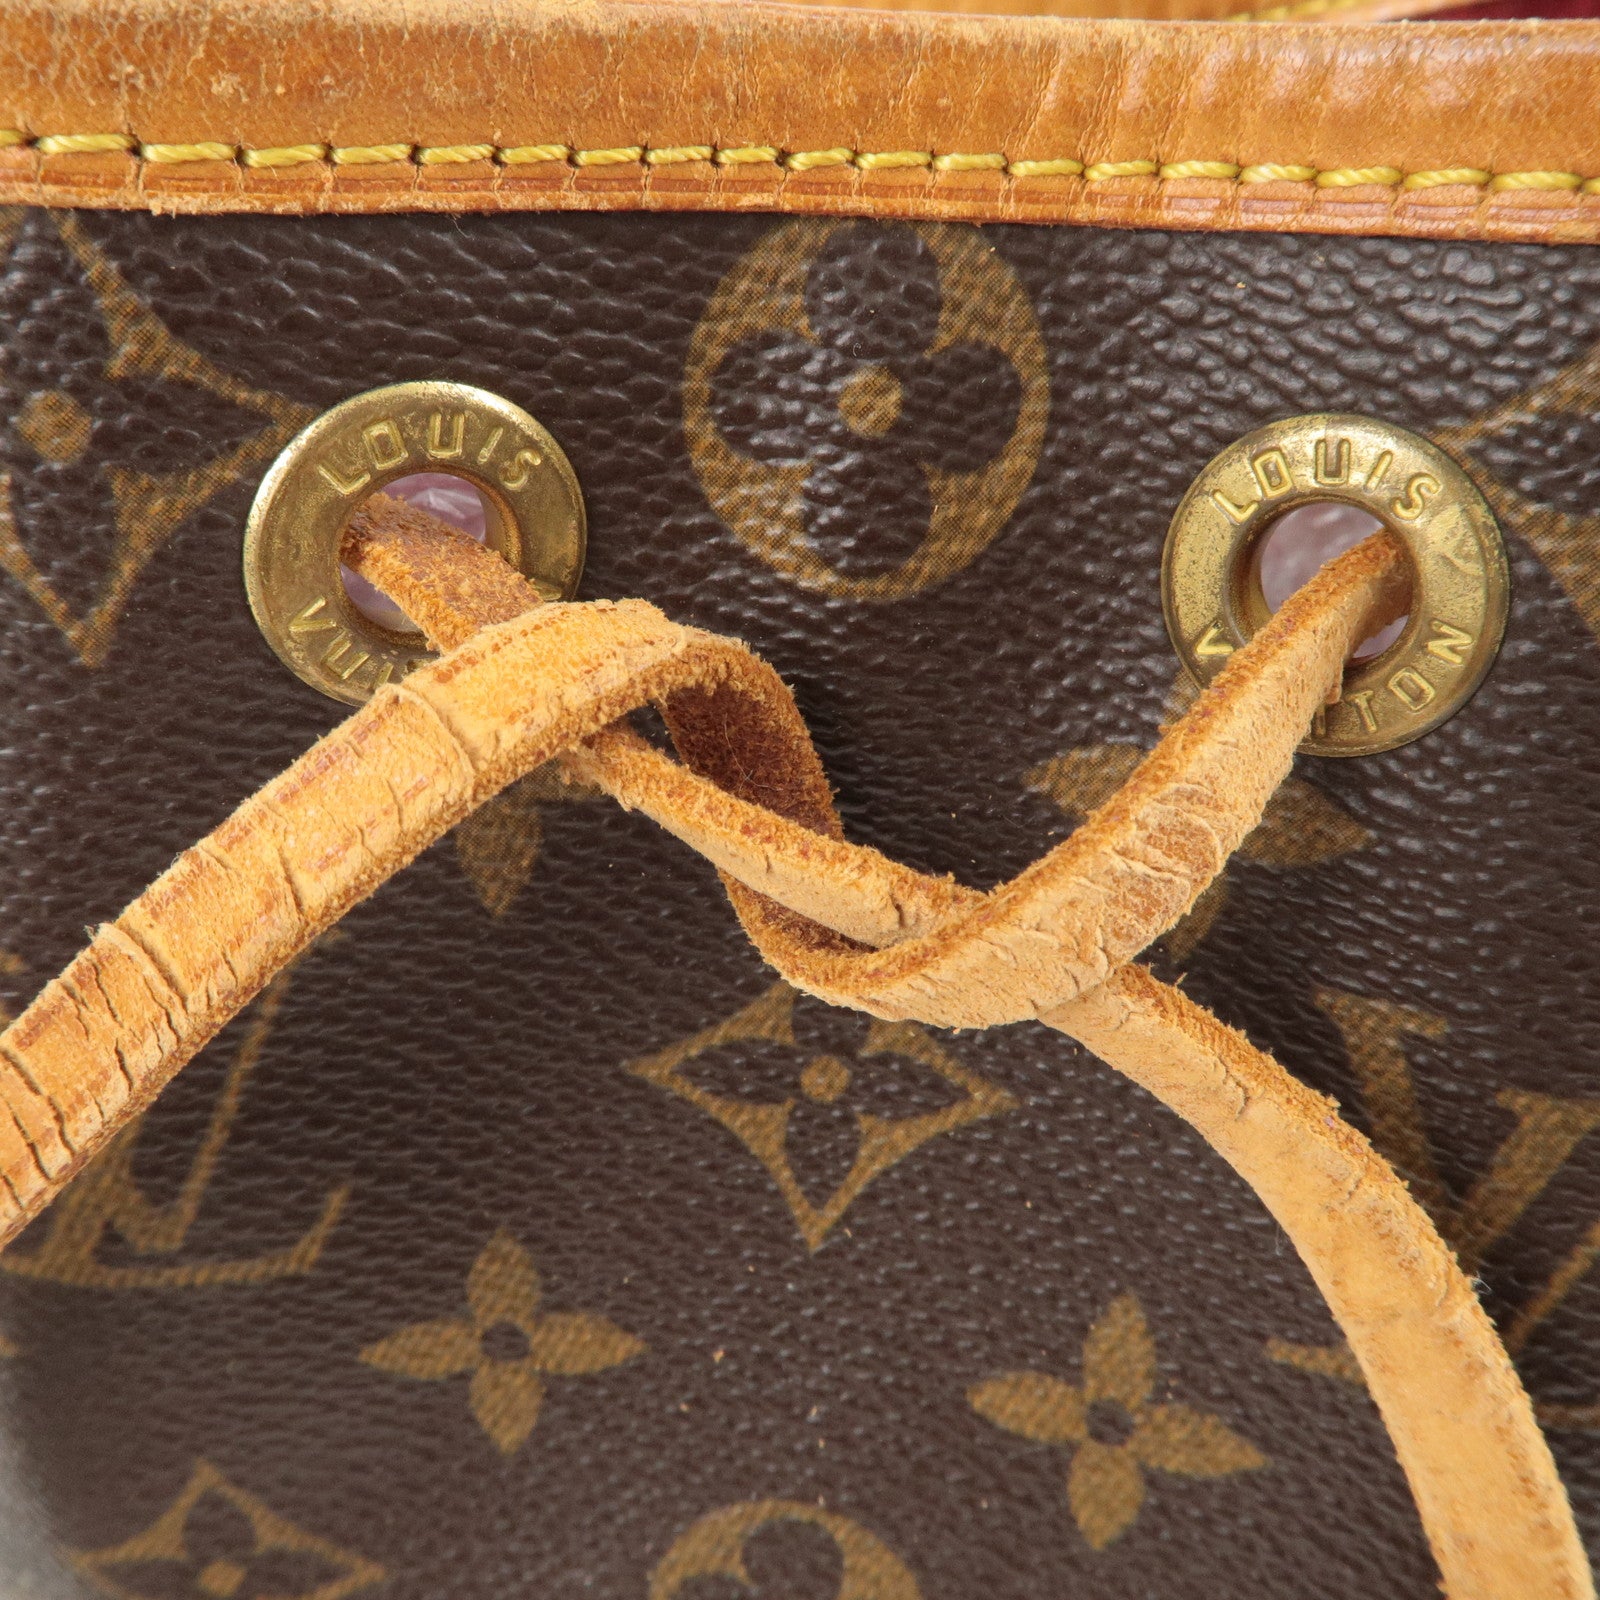 Louis-Vuitton-Monogram-Mini-Noe-Bag-Japon-Limited-Edition-M99162